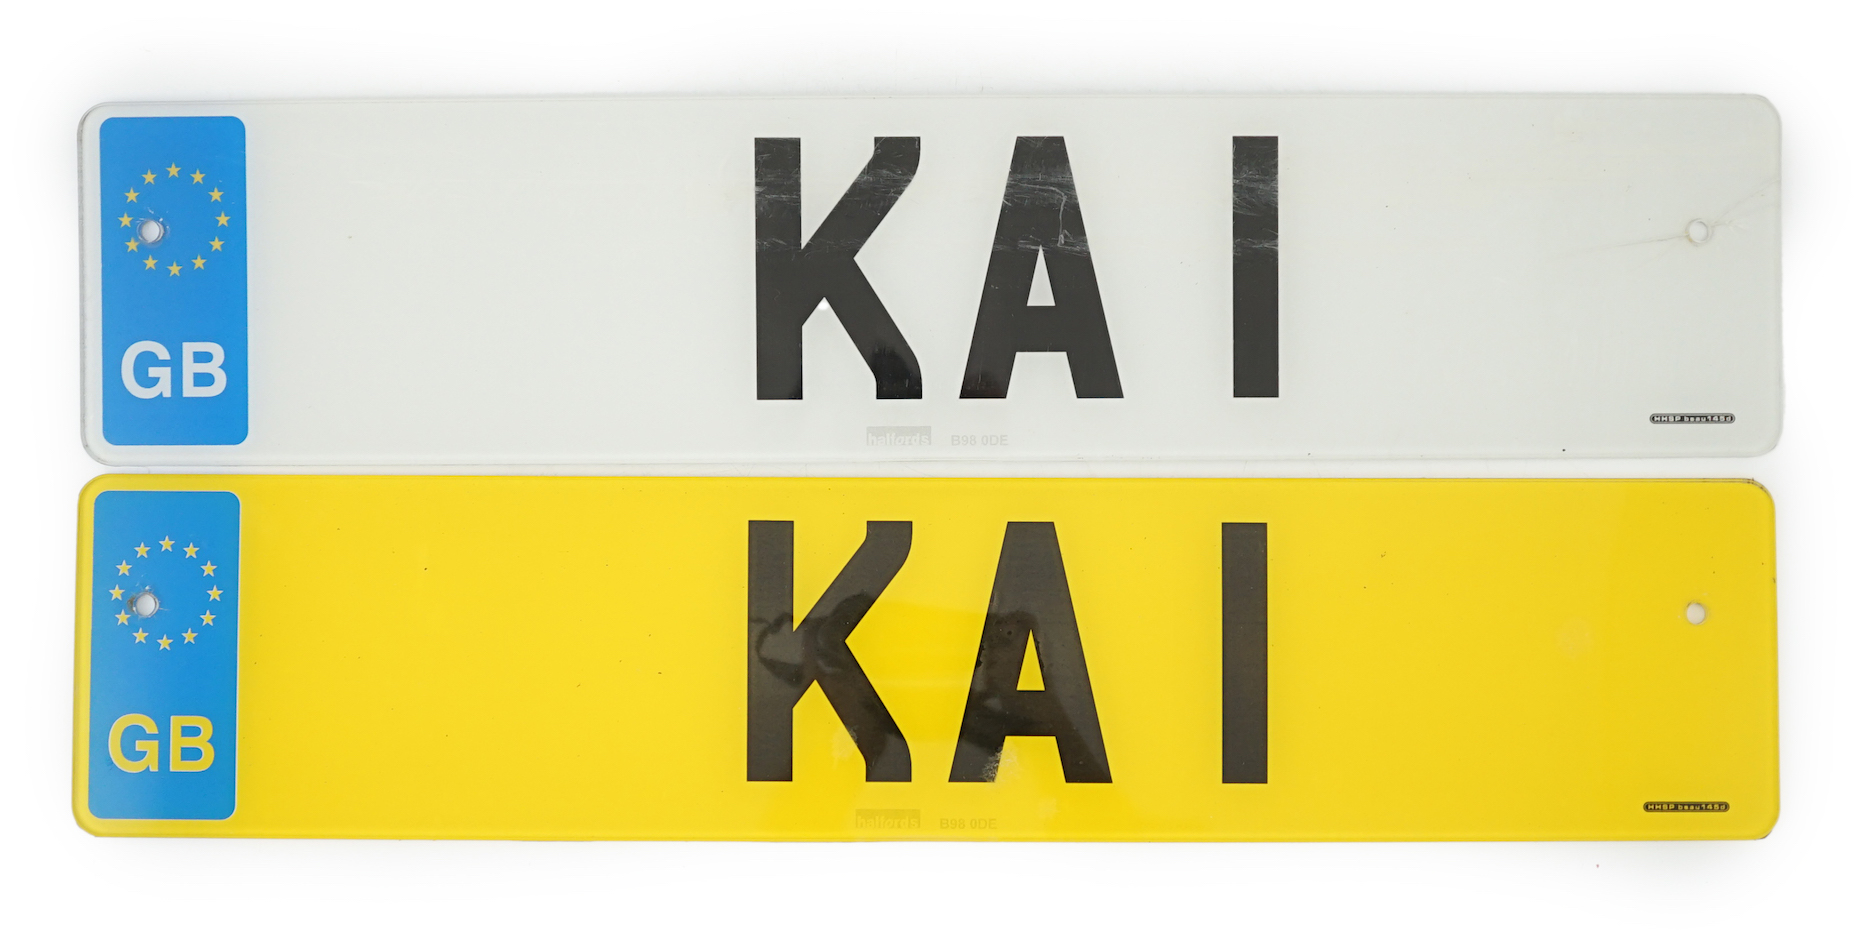 UK Vehicle registration number 'KA 1'